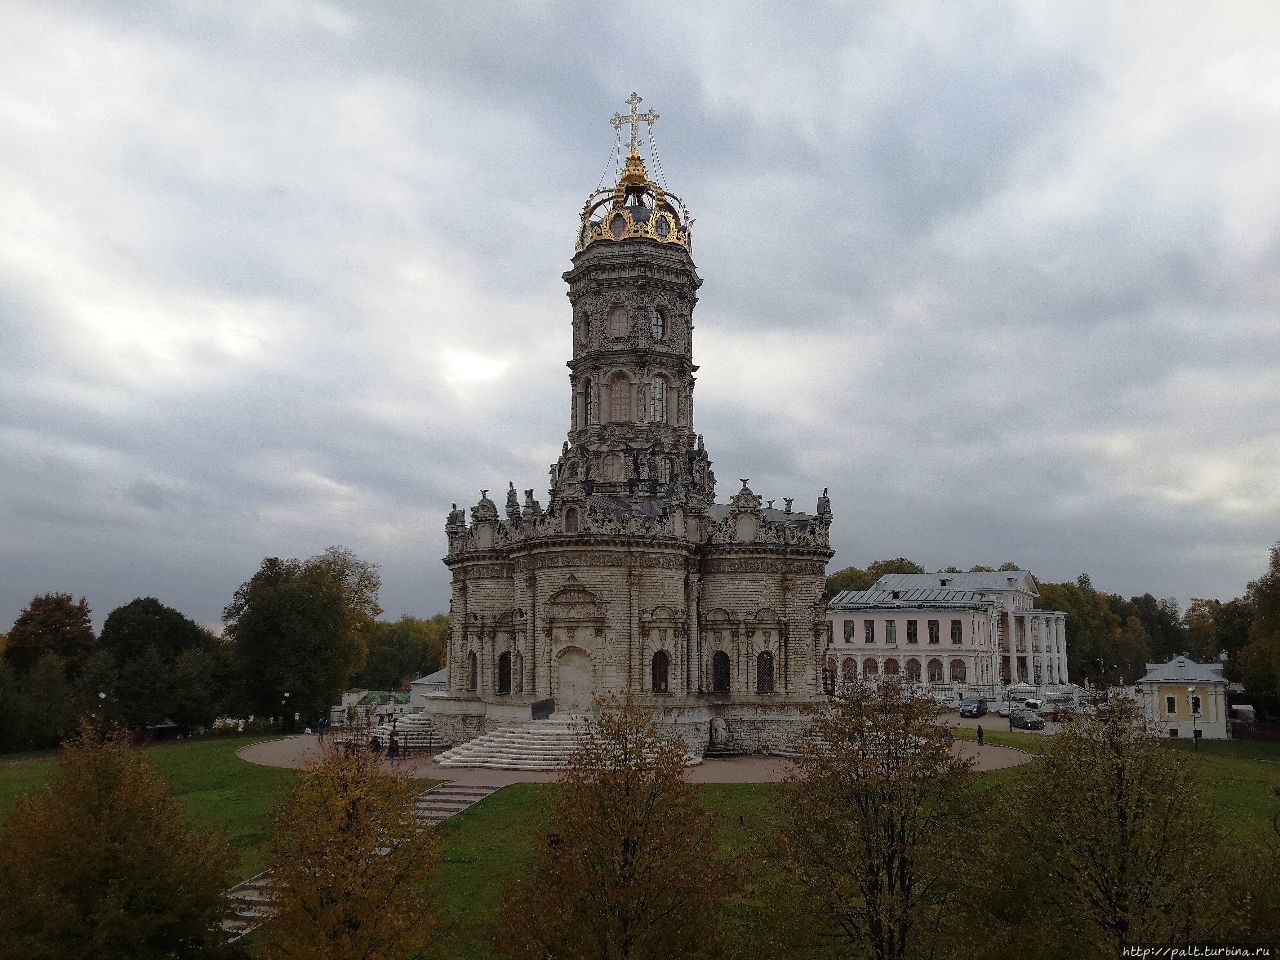 Православный храм в честь иконы Божией Матери «Знамение». в Дубровицаx (Подольск, Московская область), начало октября 2018 года